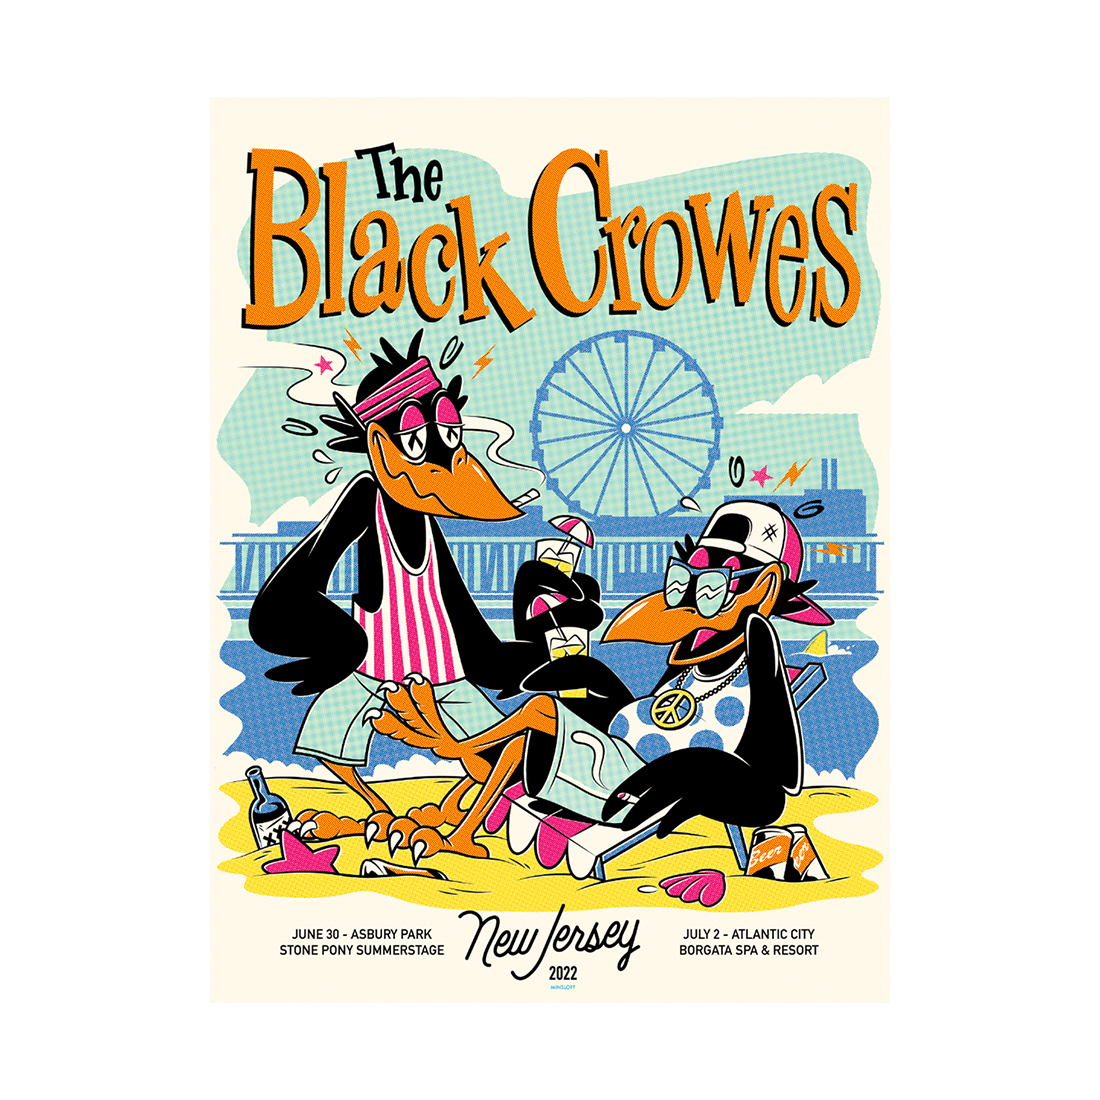 black crowes world tour